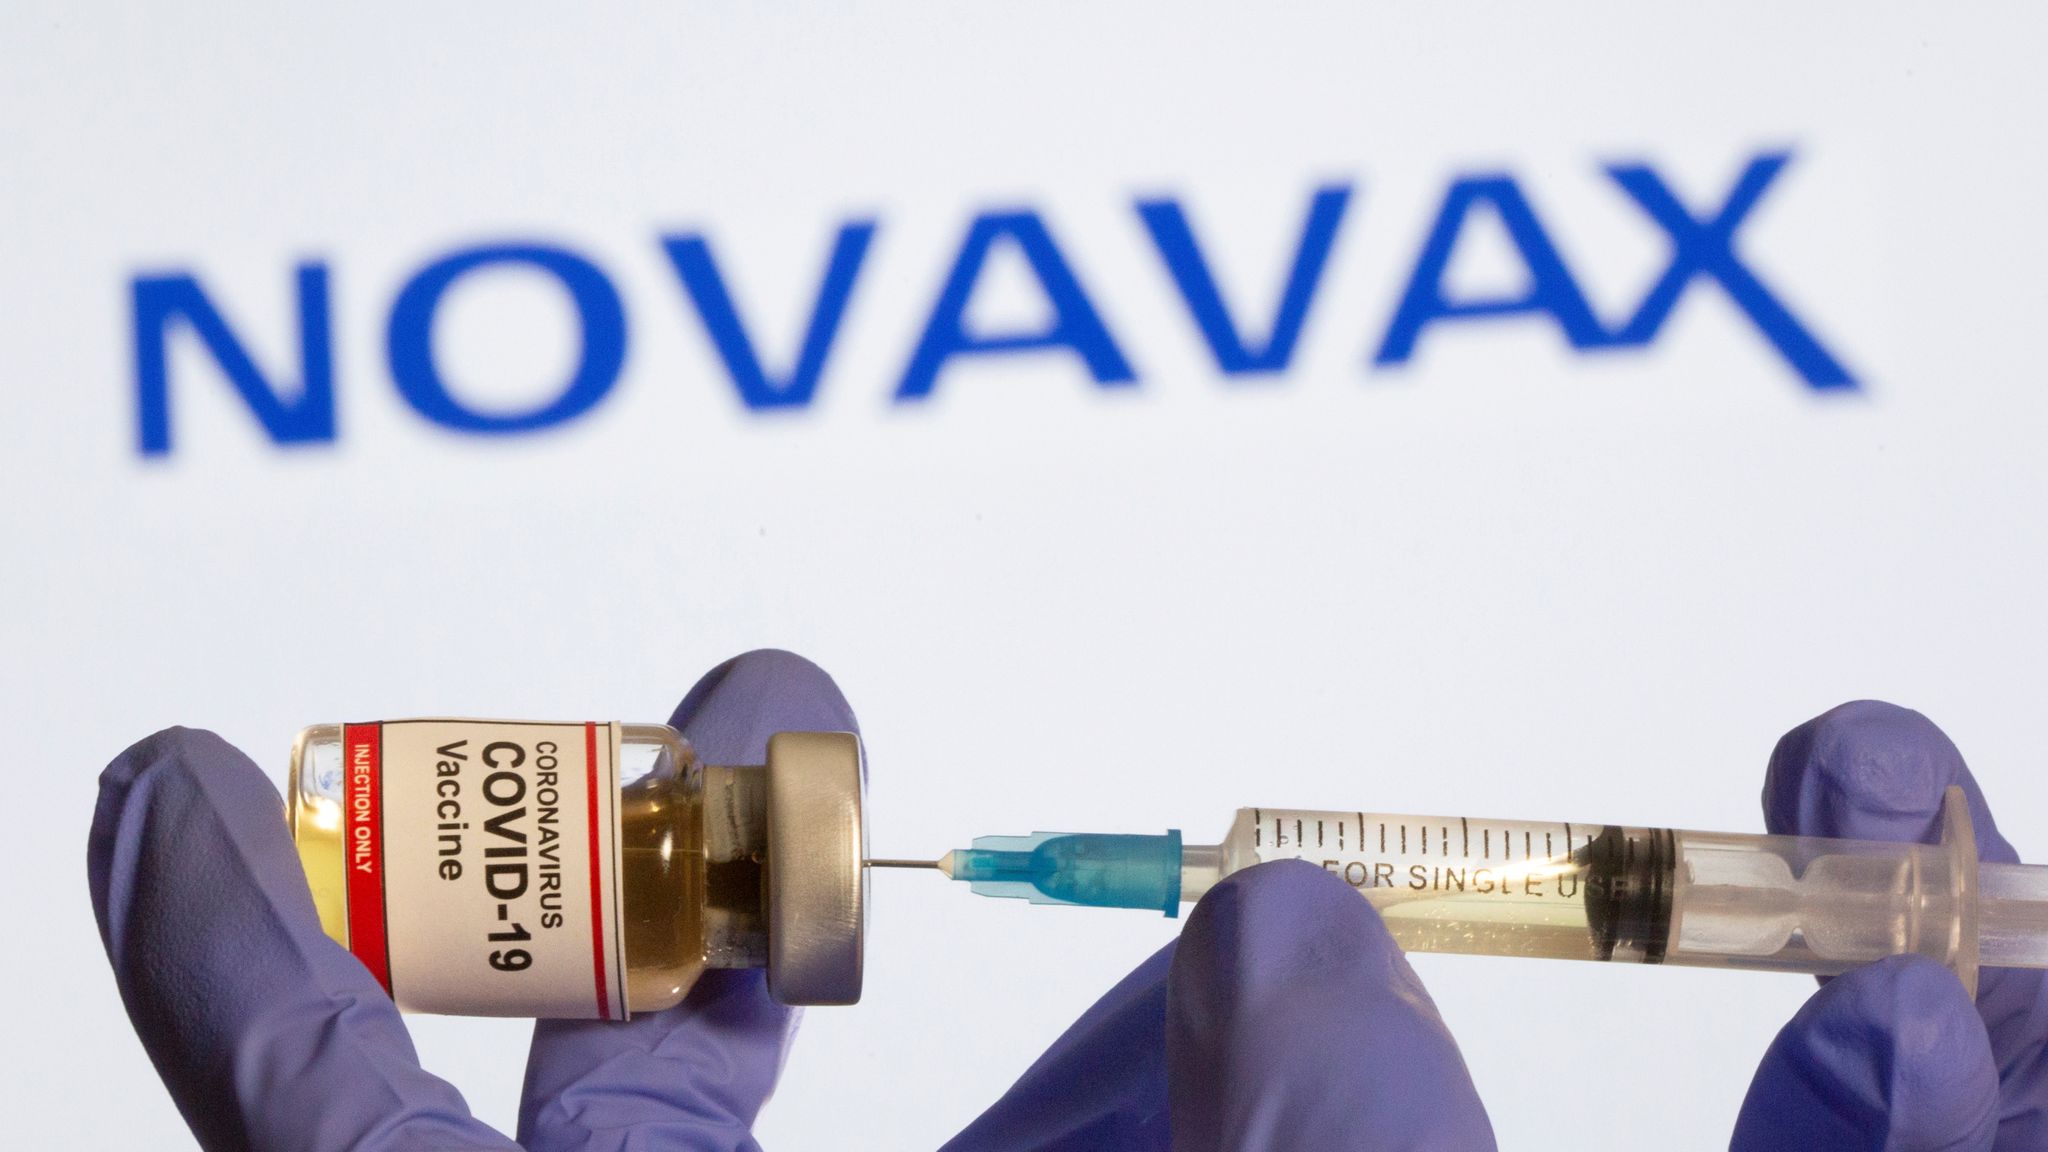 Vaksina Novavax 89.3% efektive për Covid-19, jo shumë rezultat ndaj variantit të Afrikës së Jugut